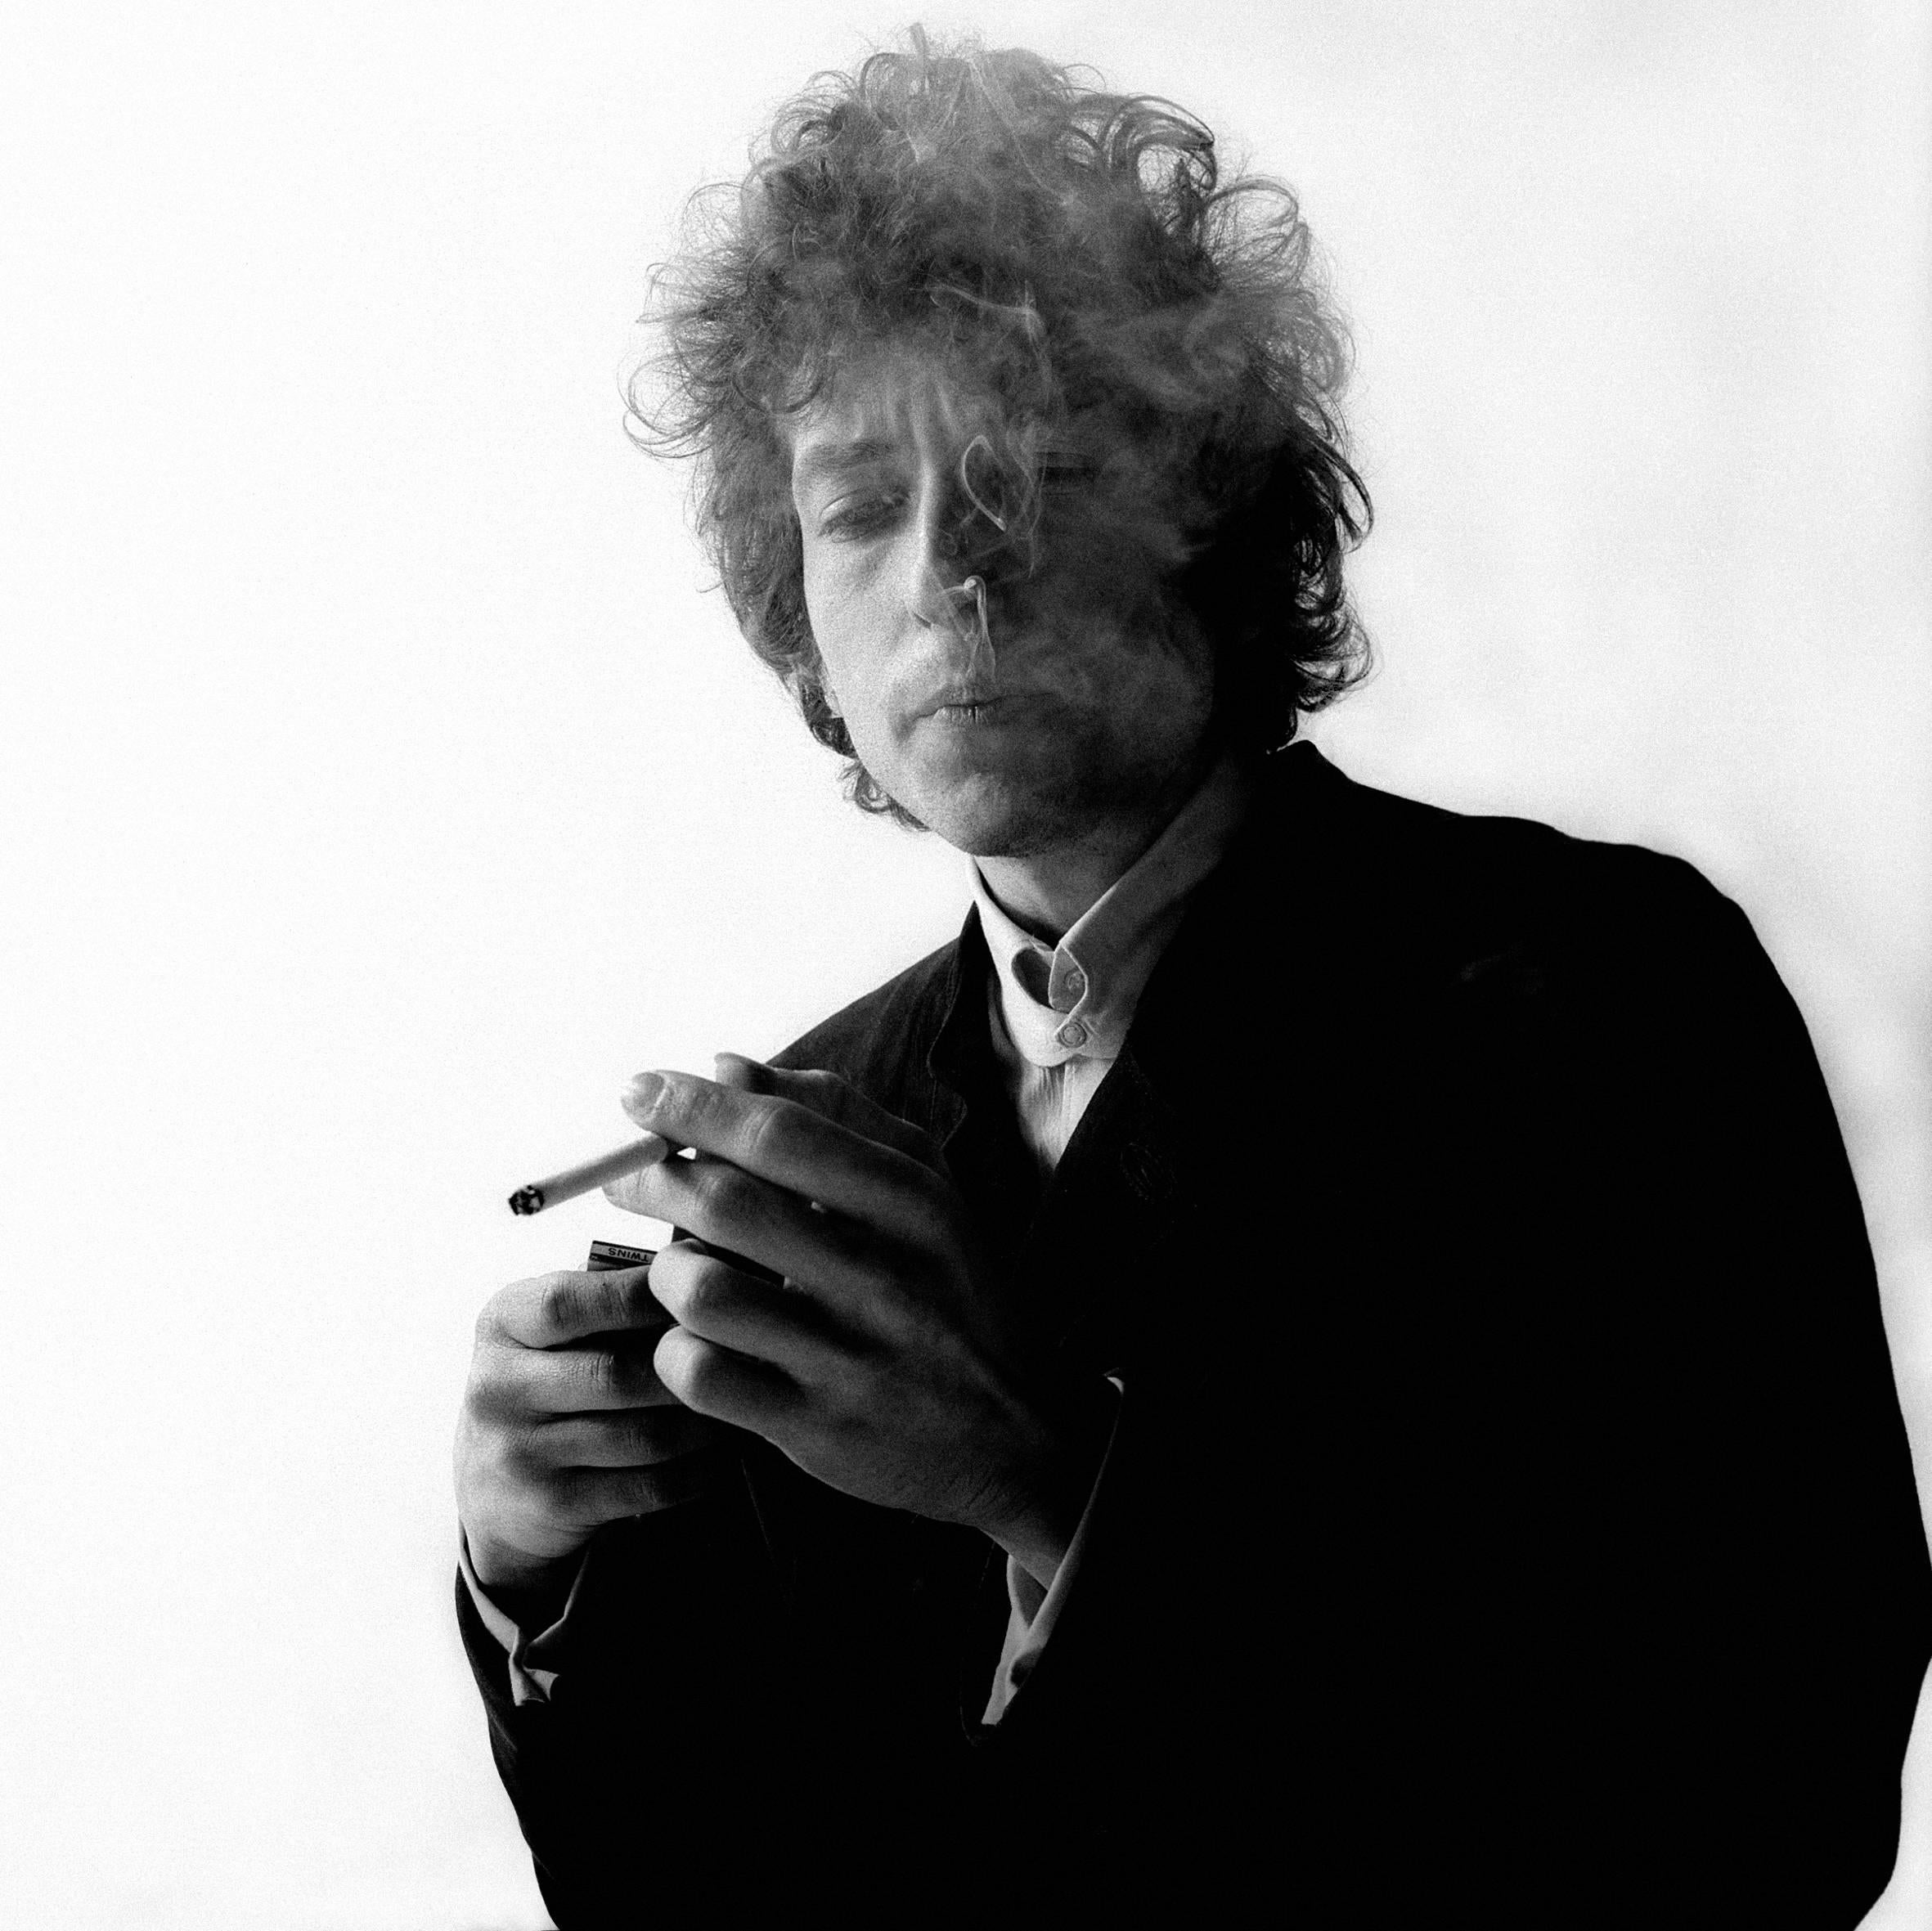 Bob Dylan - Jerry Schatzberg (Porträtfotografie)
Signiert und nummeriert auf der Rückseite
Silber-Gelatine-Druck
8 x 10 Zoll, Auflage von 25 + 5 APs - $3.000
11 x 14 Zoll, Auflage von 25 + 5 APs - $6.000
16 x 20 Zoll, Auflage von 25 + 5 APs -